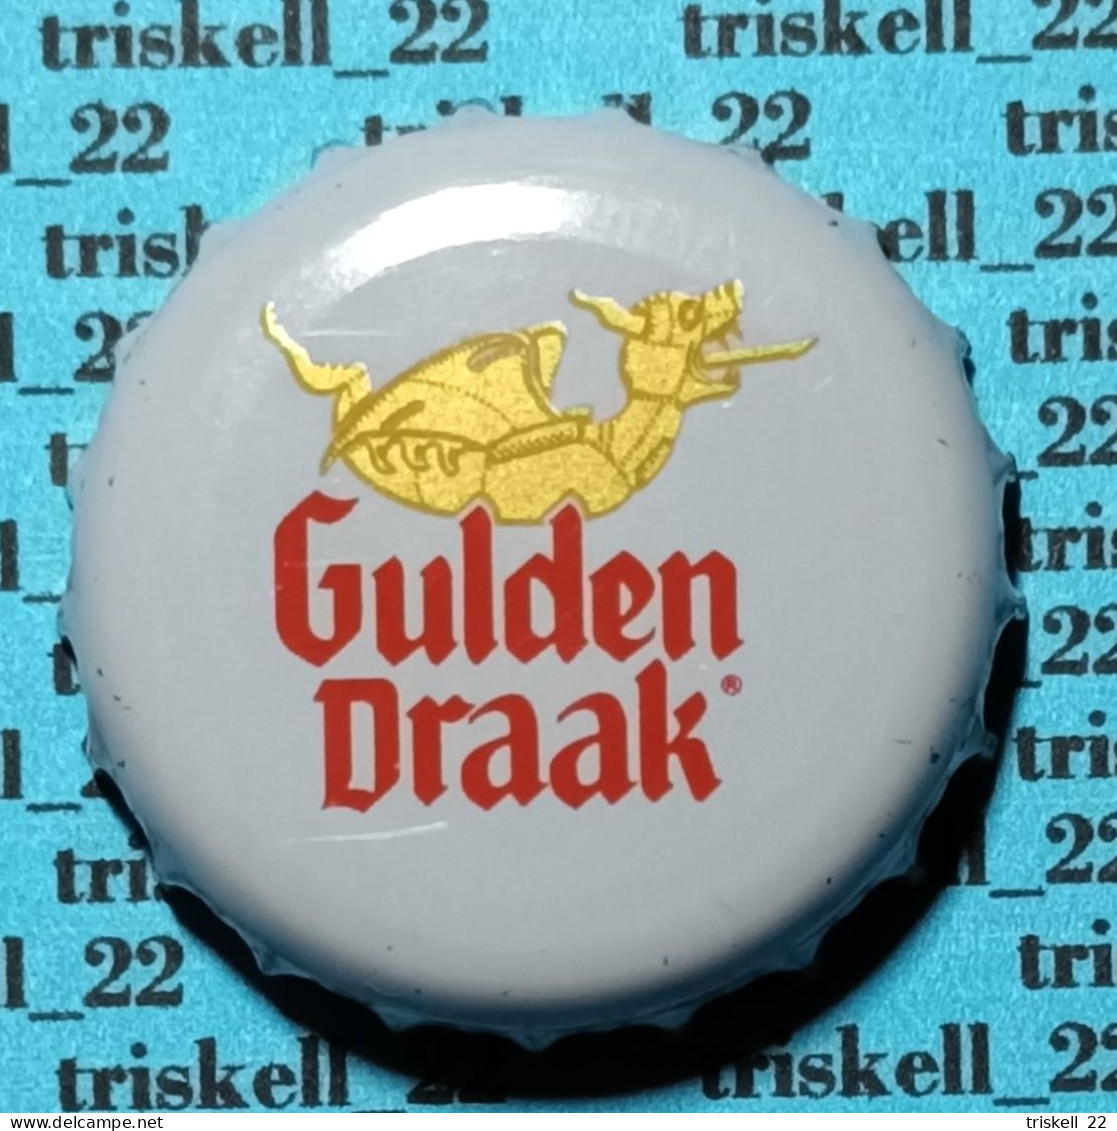 Gulden Draak Classic    Mev12 - Beer